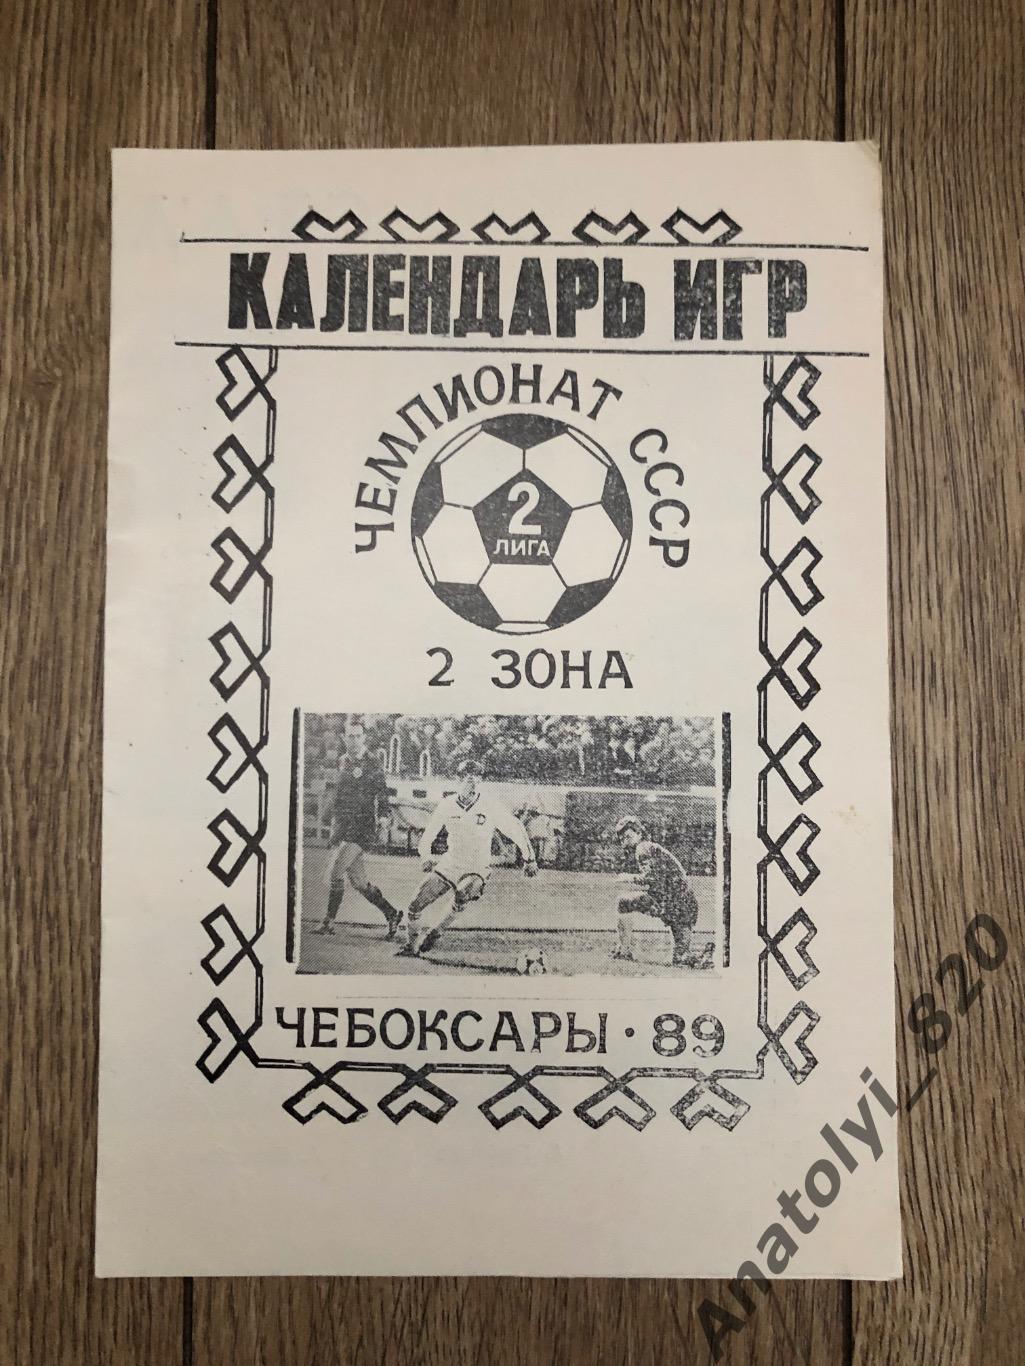 Сталь Чебоксары буклет, календарь игр 1989 год